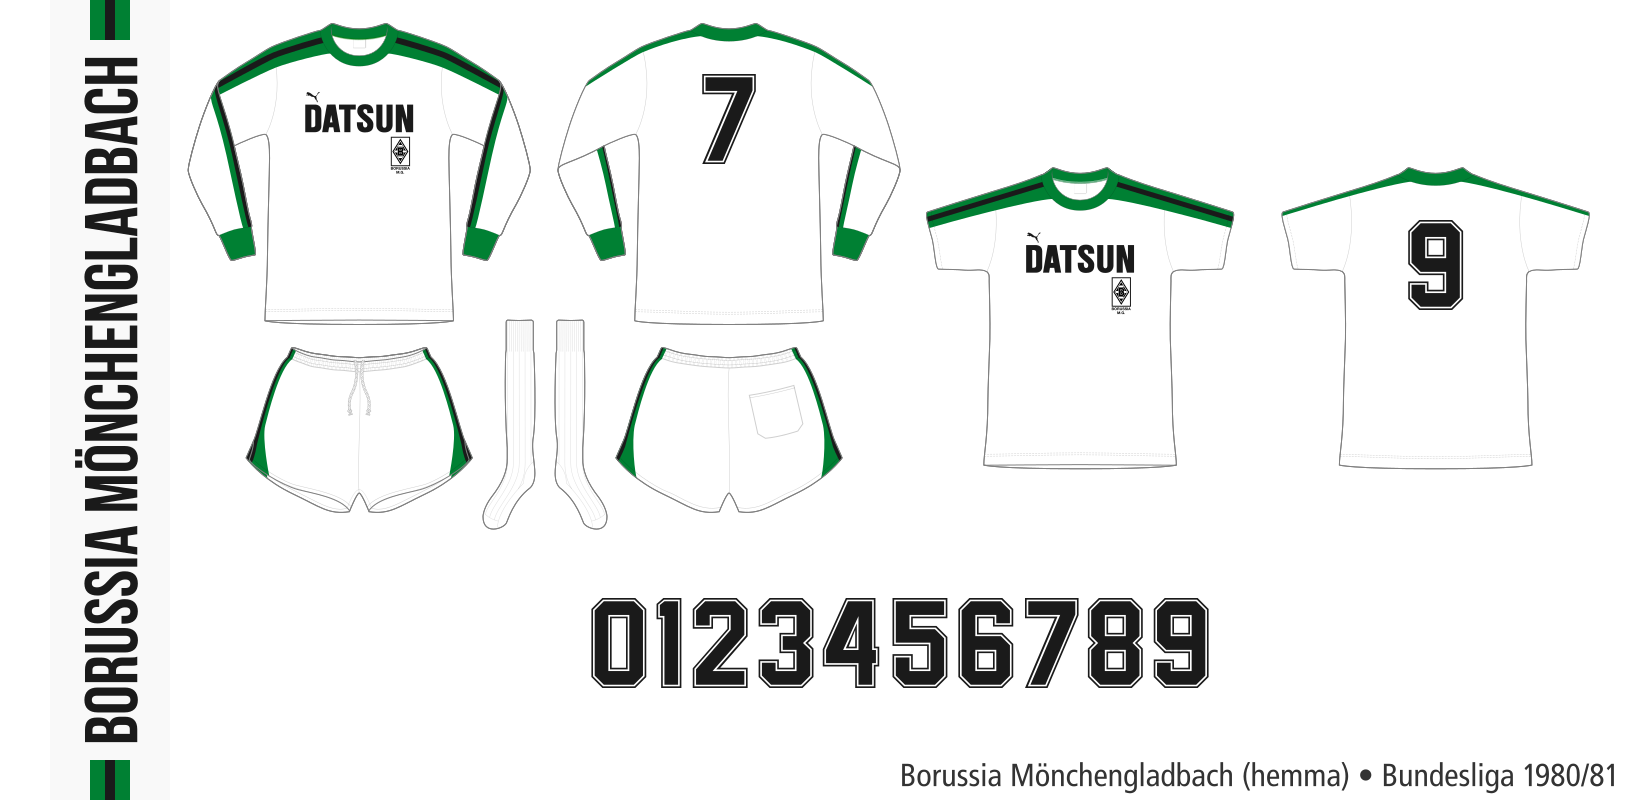 Borussia Mönchengladbach 1980/81 (hemma)